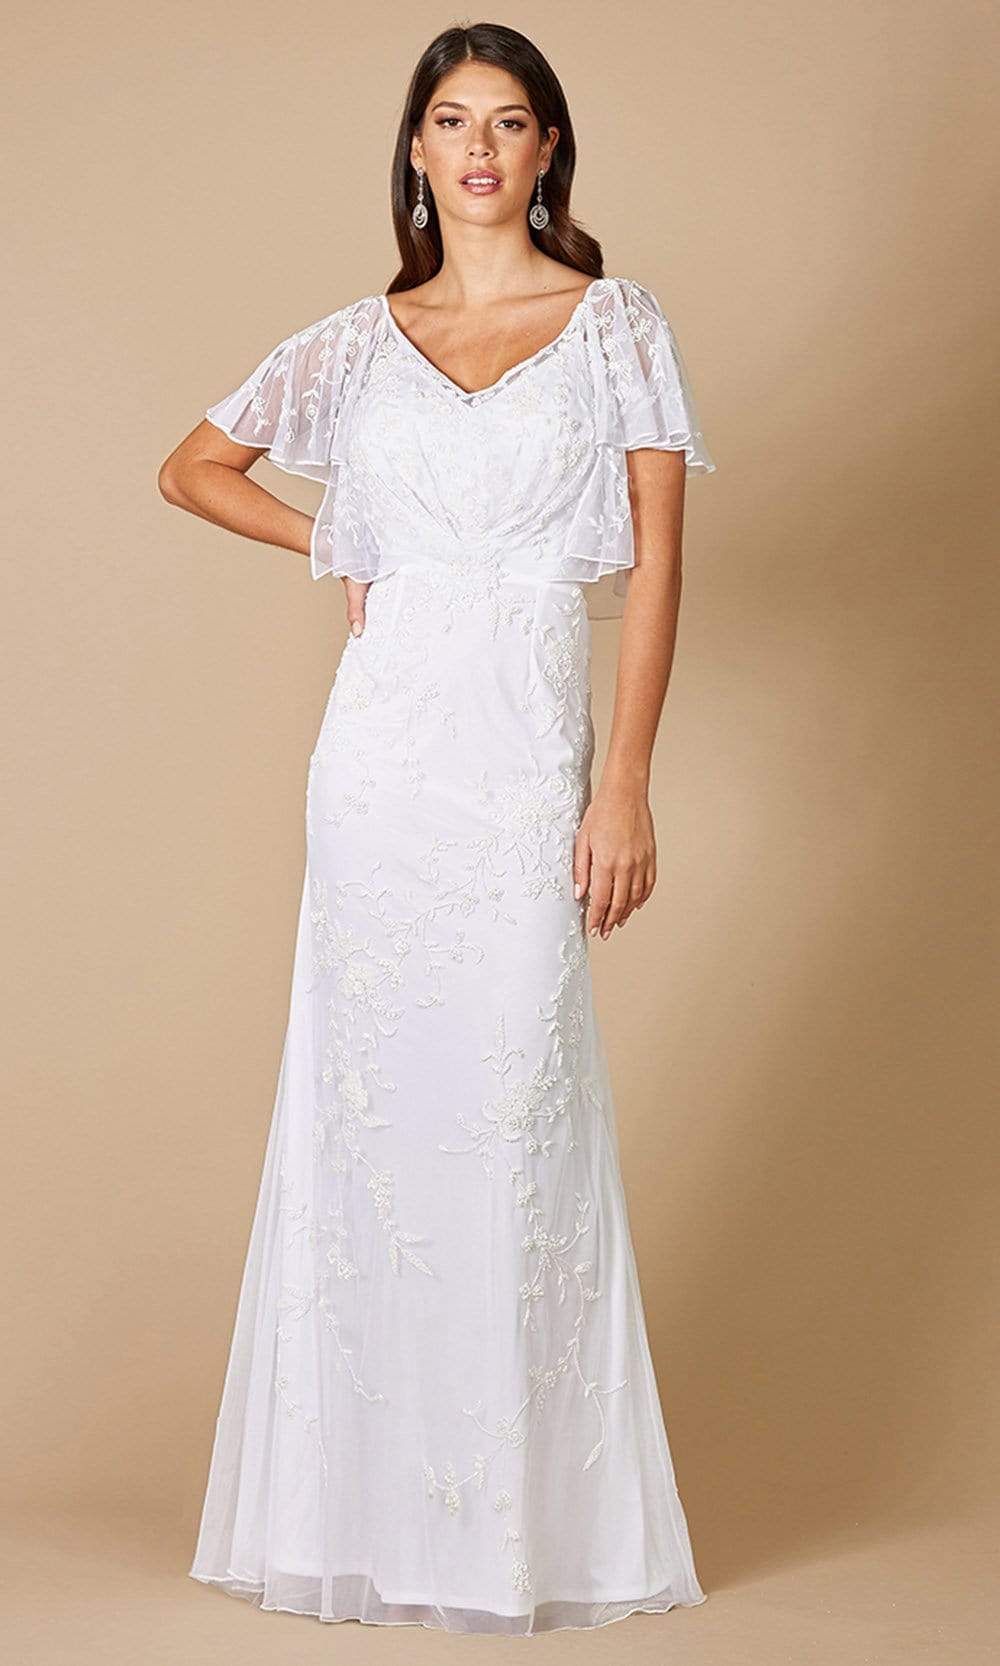 Lara Dresses - 51056 Flutter Sleeve Embellished Bridal Gown
